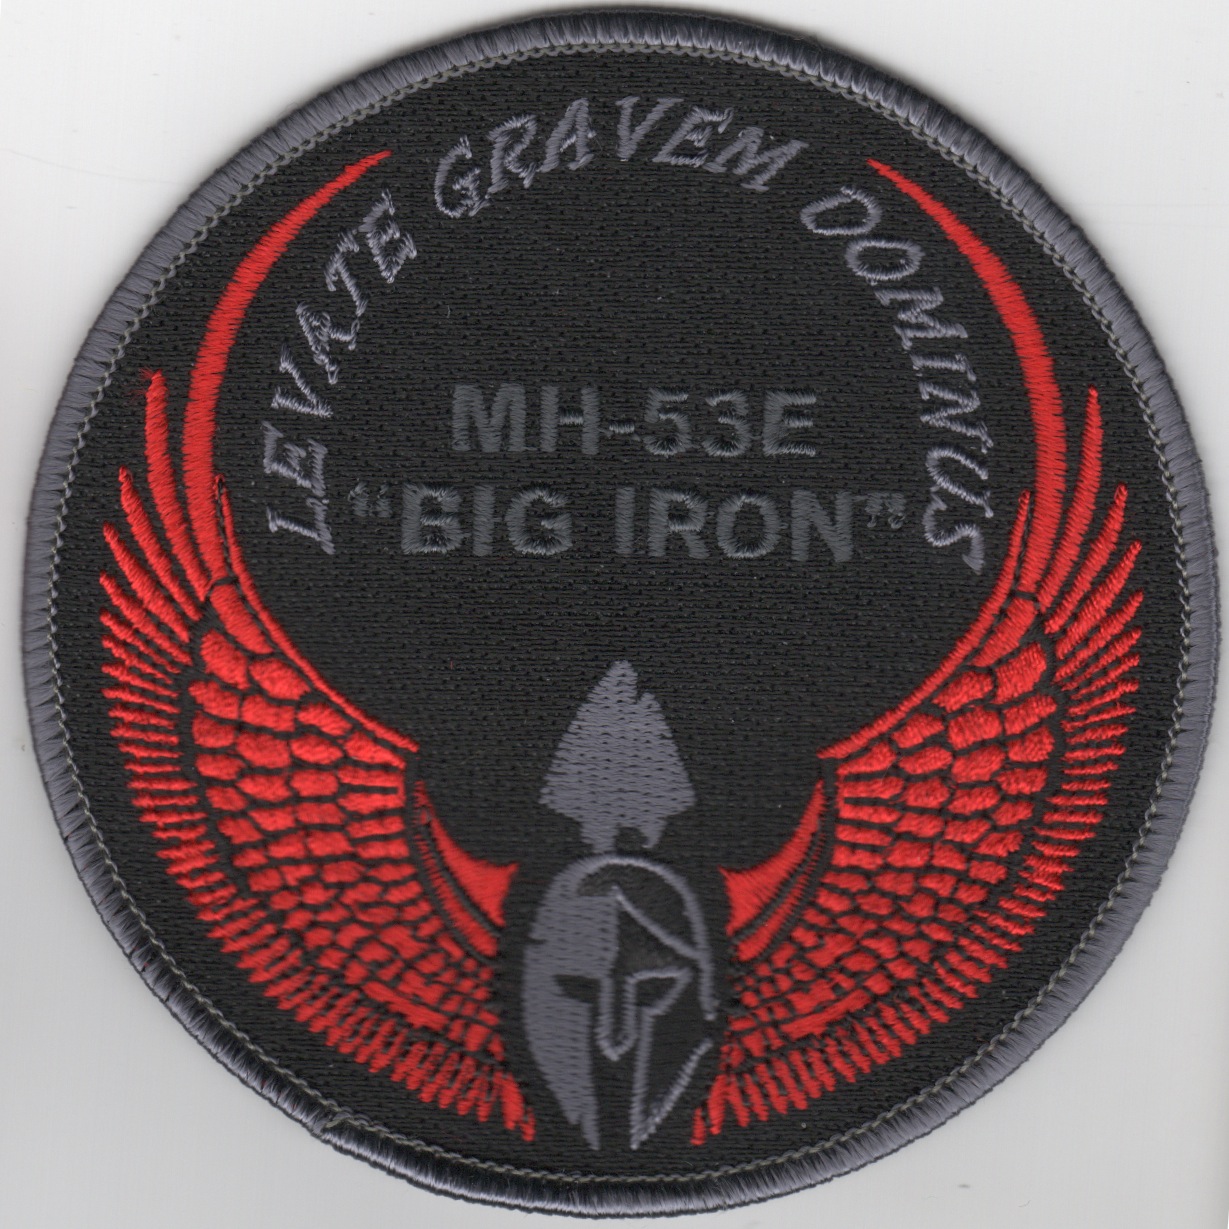 MH-53E 'Big Iron' Patch